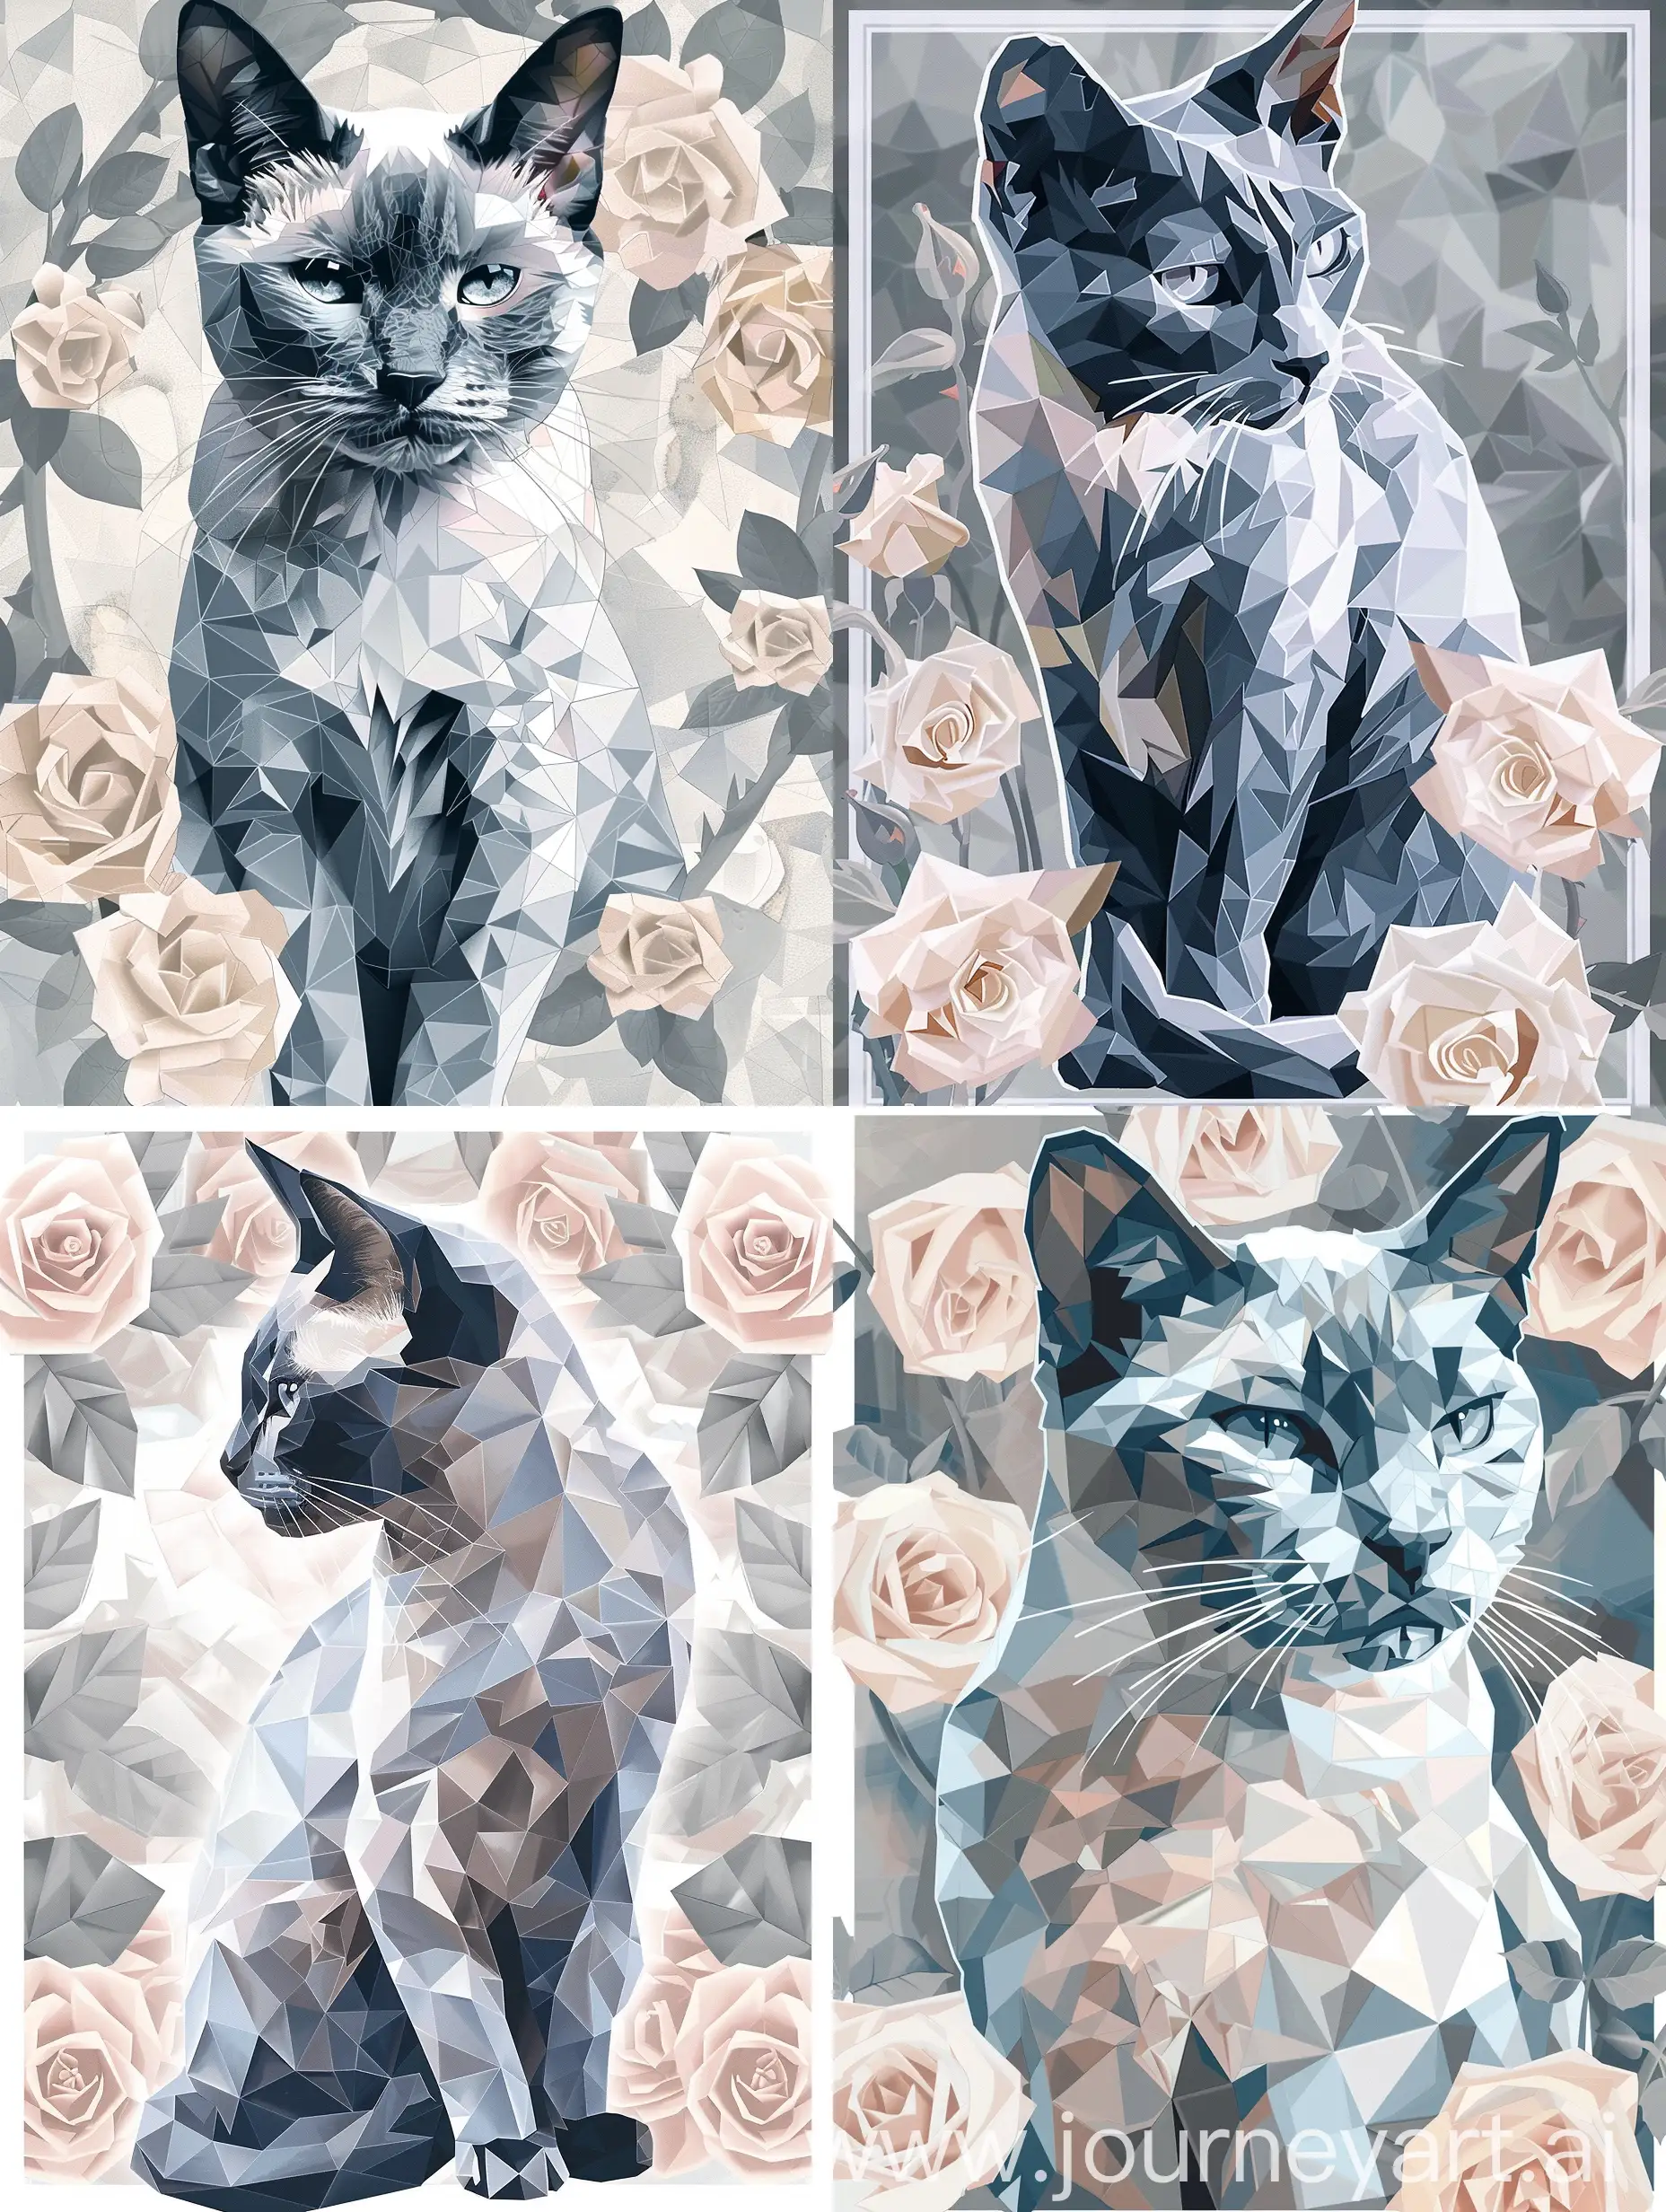 кошка русская голубая порода, рисунок в полигональном стиле, полностью вся кошка представлена в виде полигонов, светлые пепельно-розовые полигональные розы в обрамлении, цвета белый серый и темно-серый, минимализм